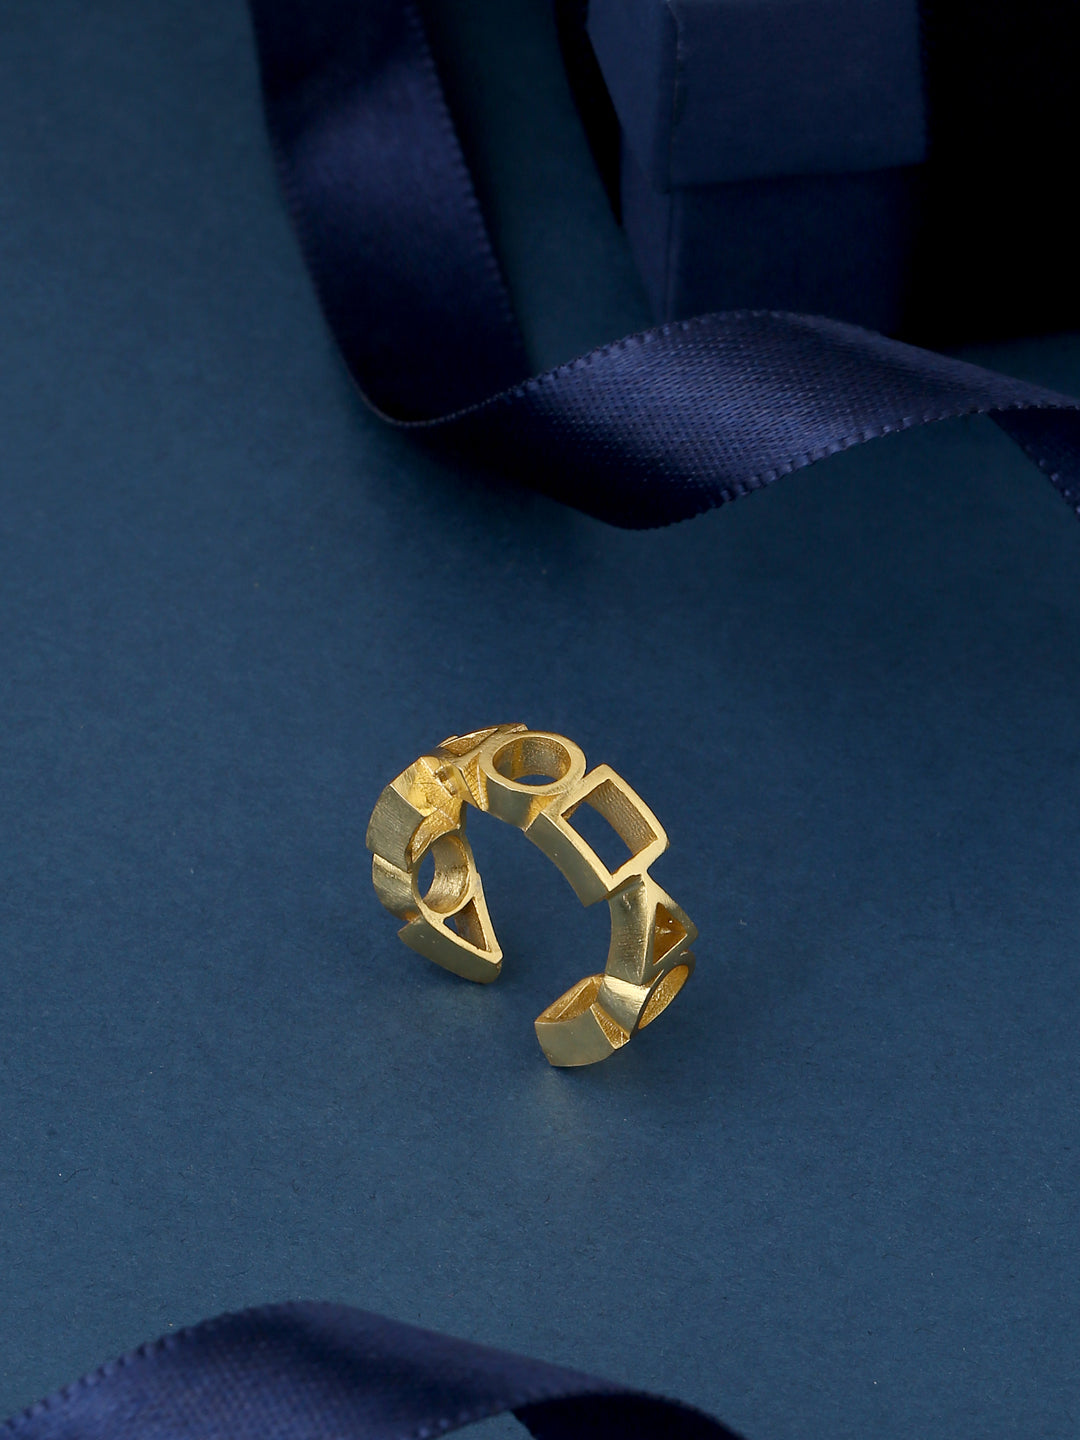 Ludic Ring - Golden